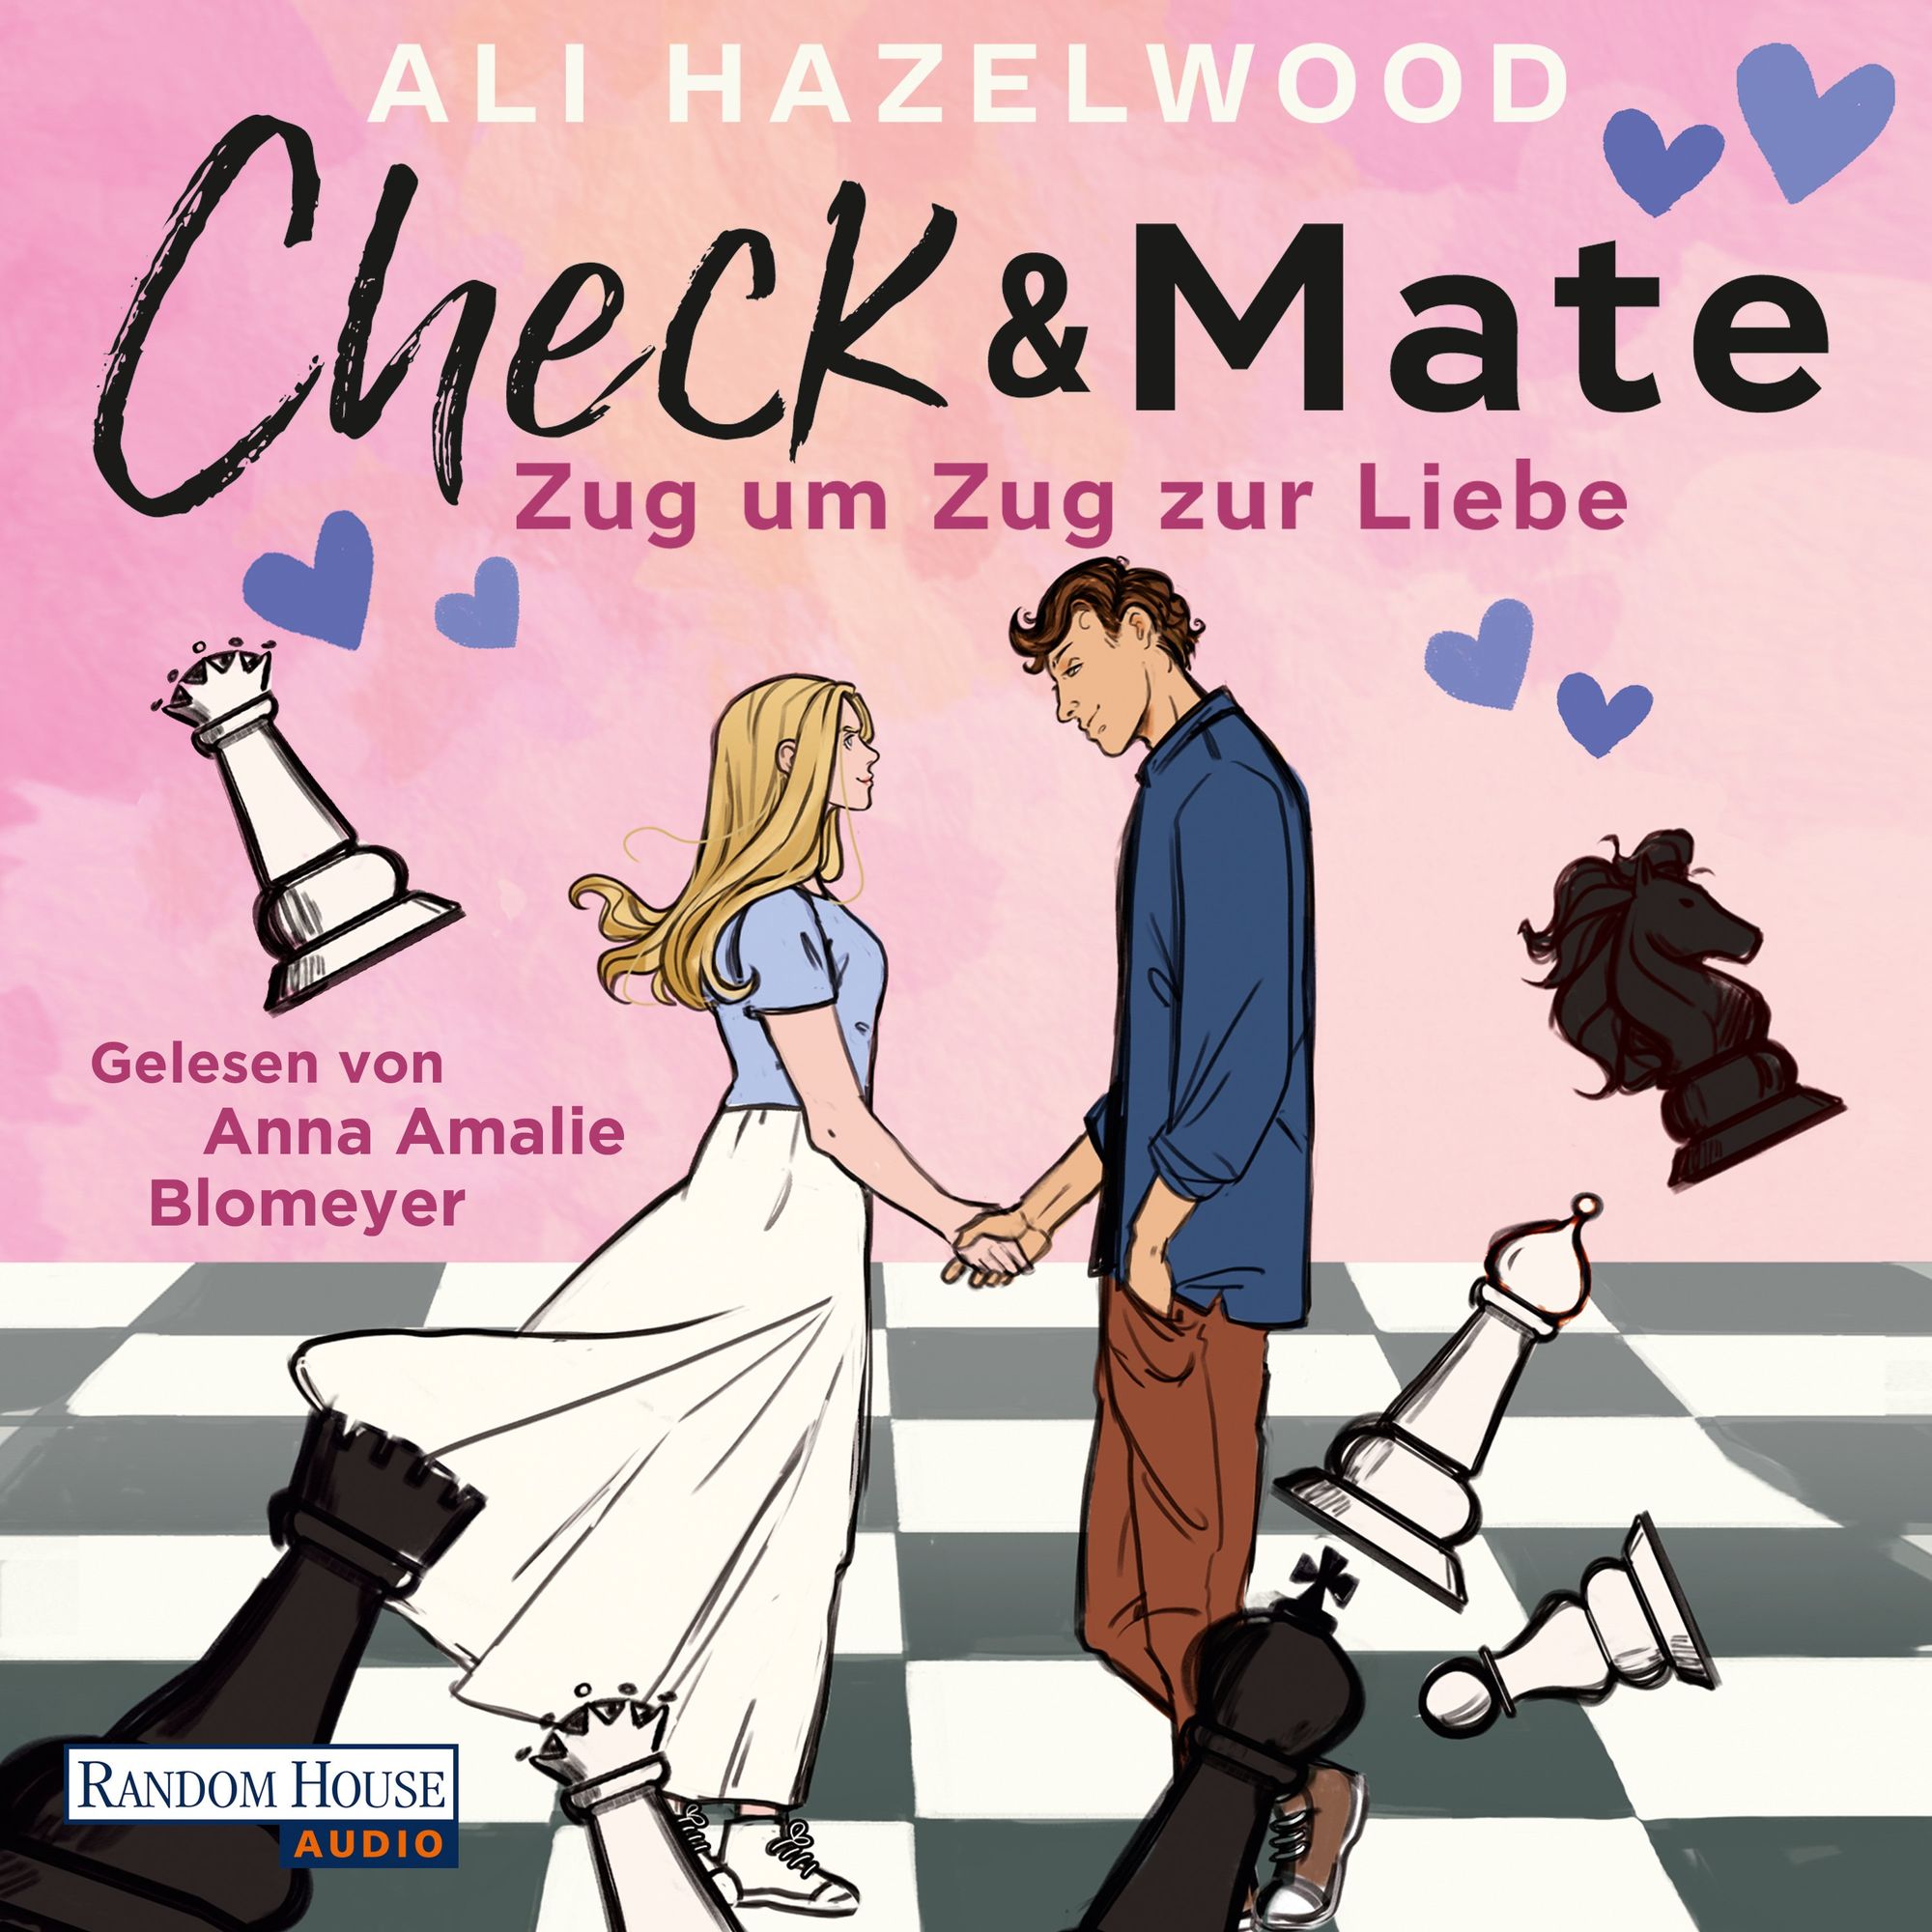 Check & Mate – Zug um Zug zur Liebe' von 'Ali Hazelwood' - Hörbuch